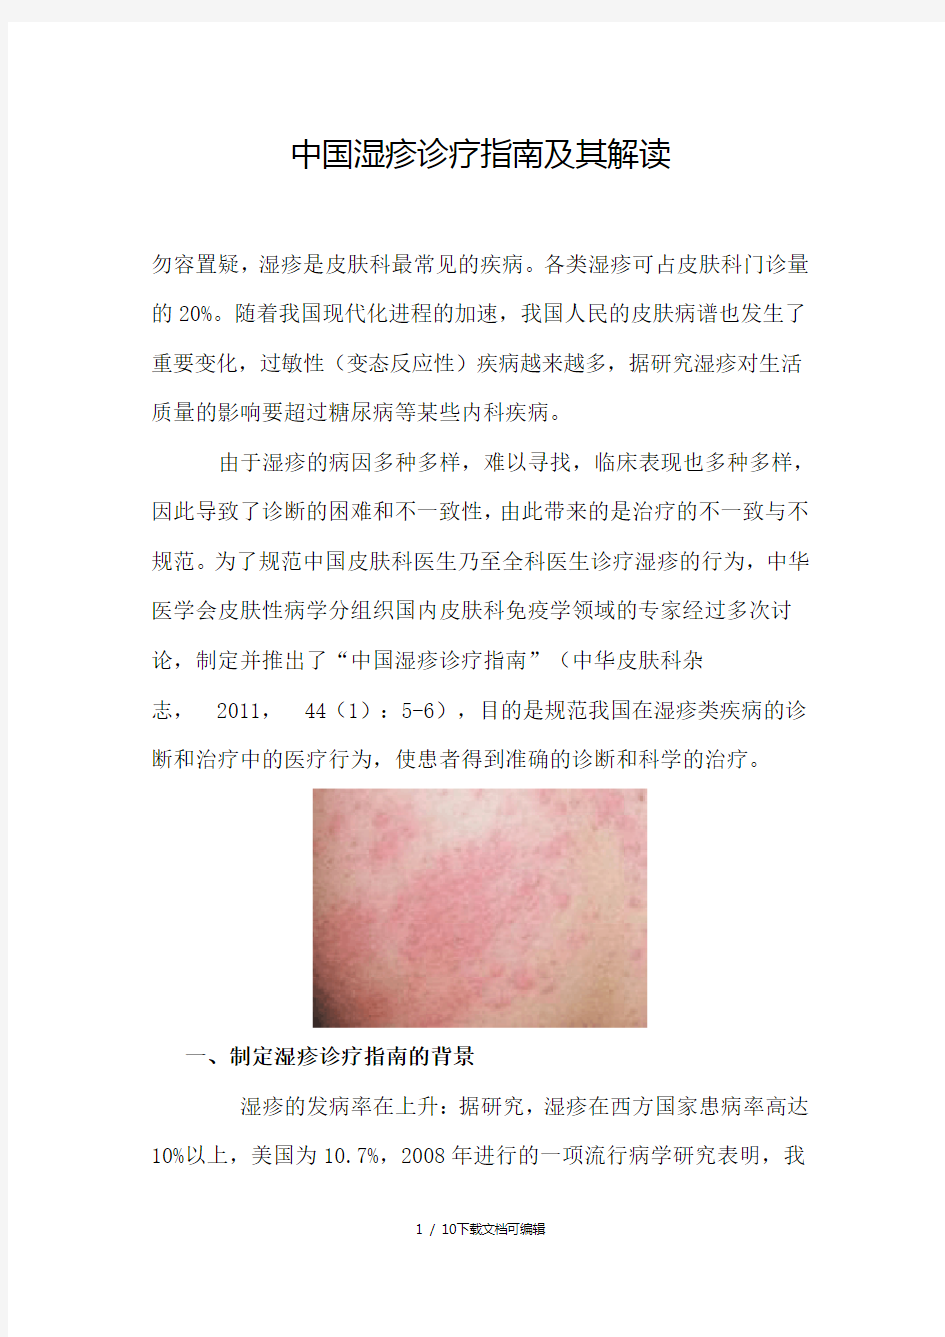 中国湿疹诊疗指南及其解读